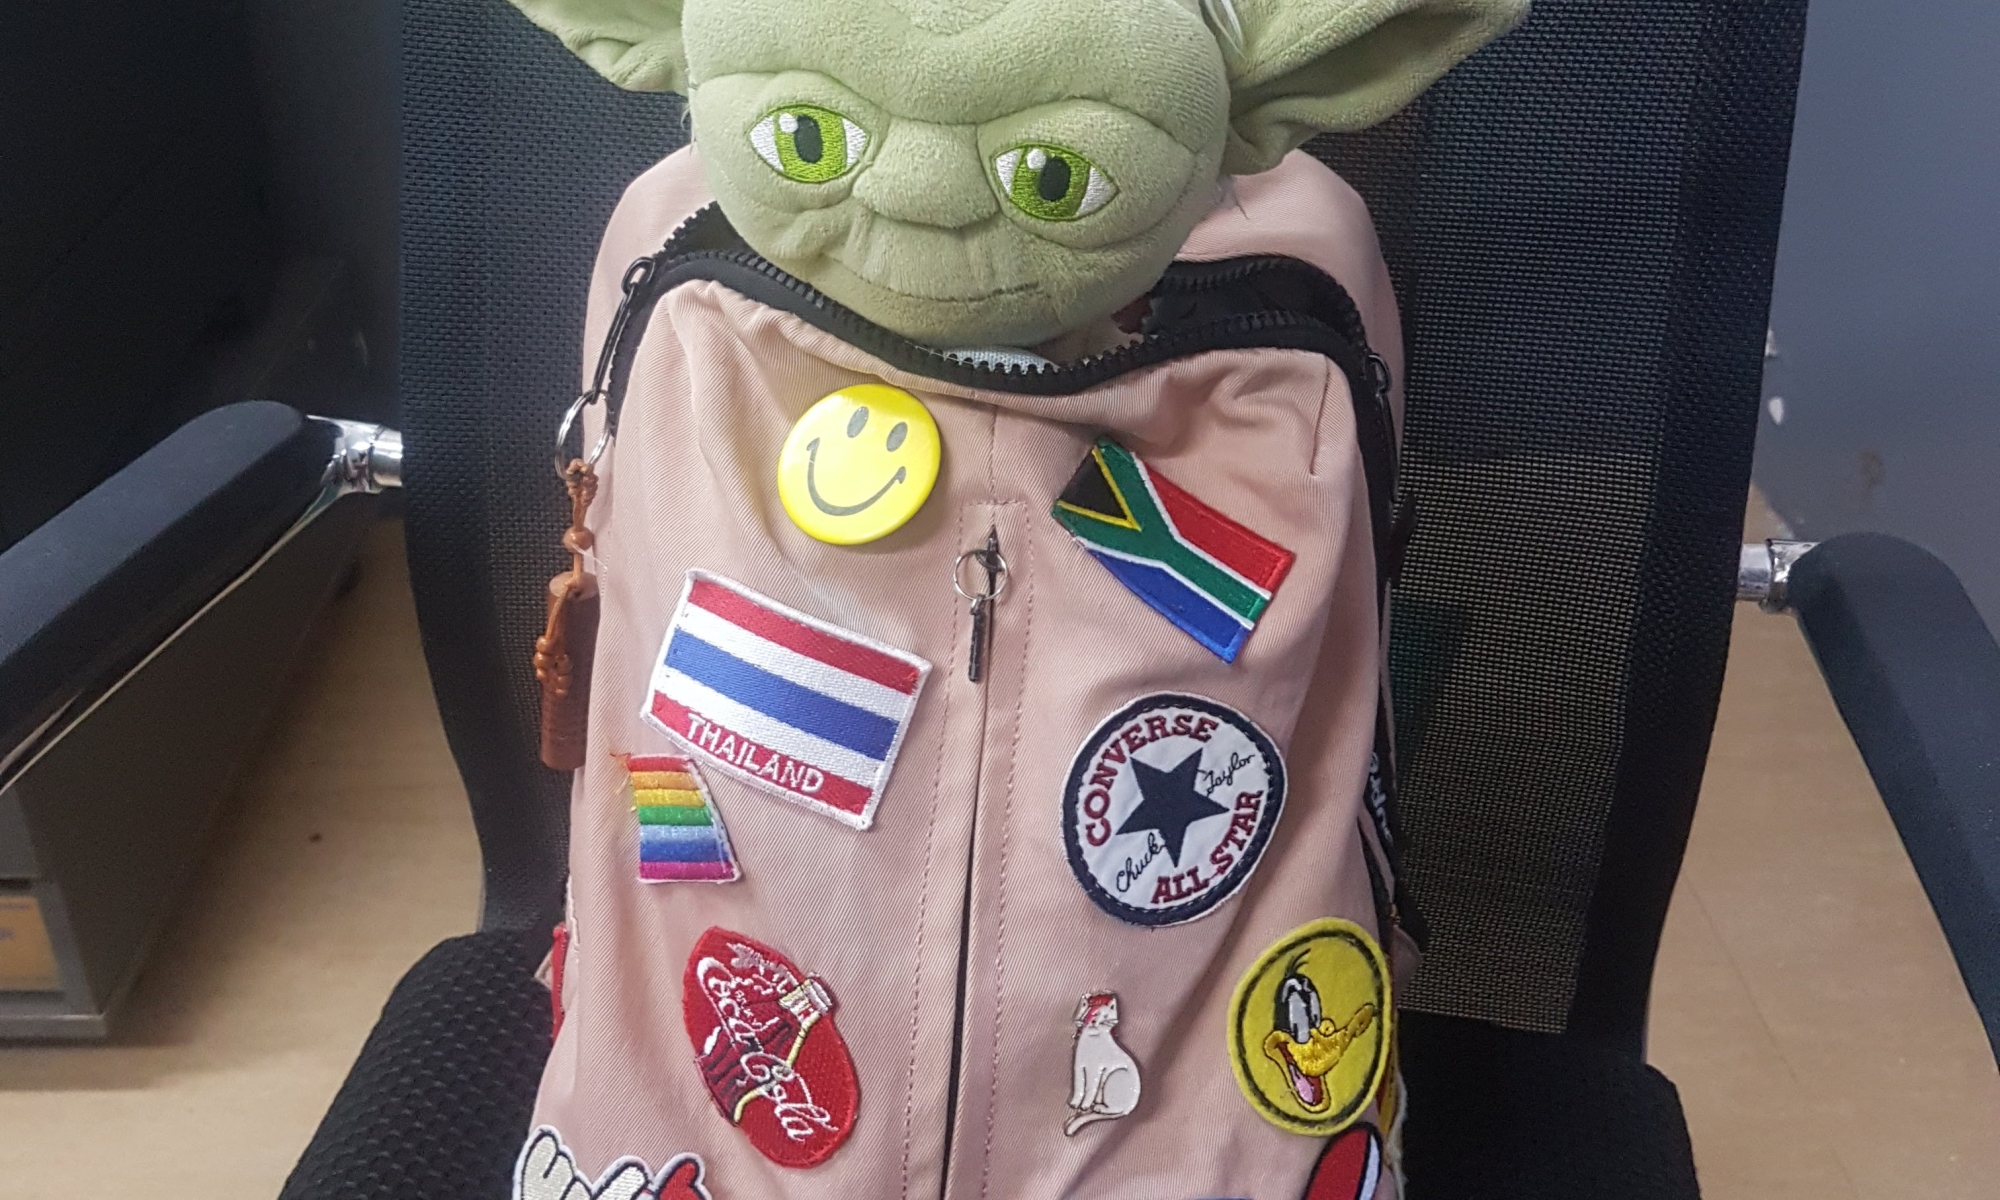 School bag with yoda doll inside